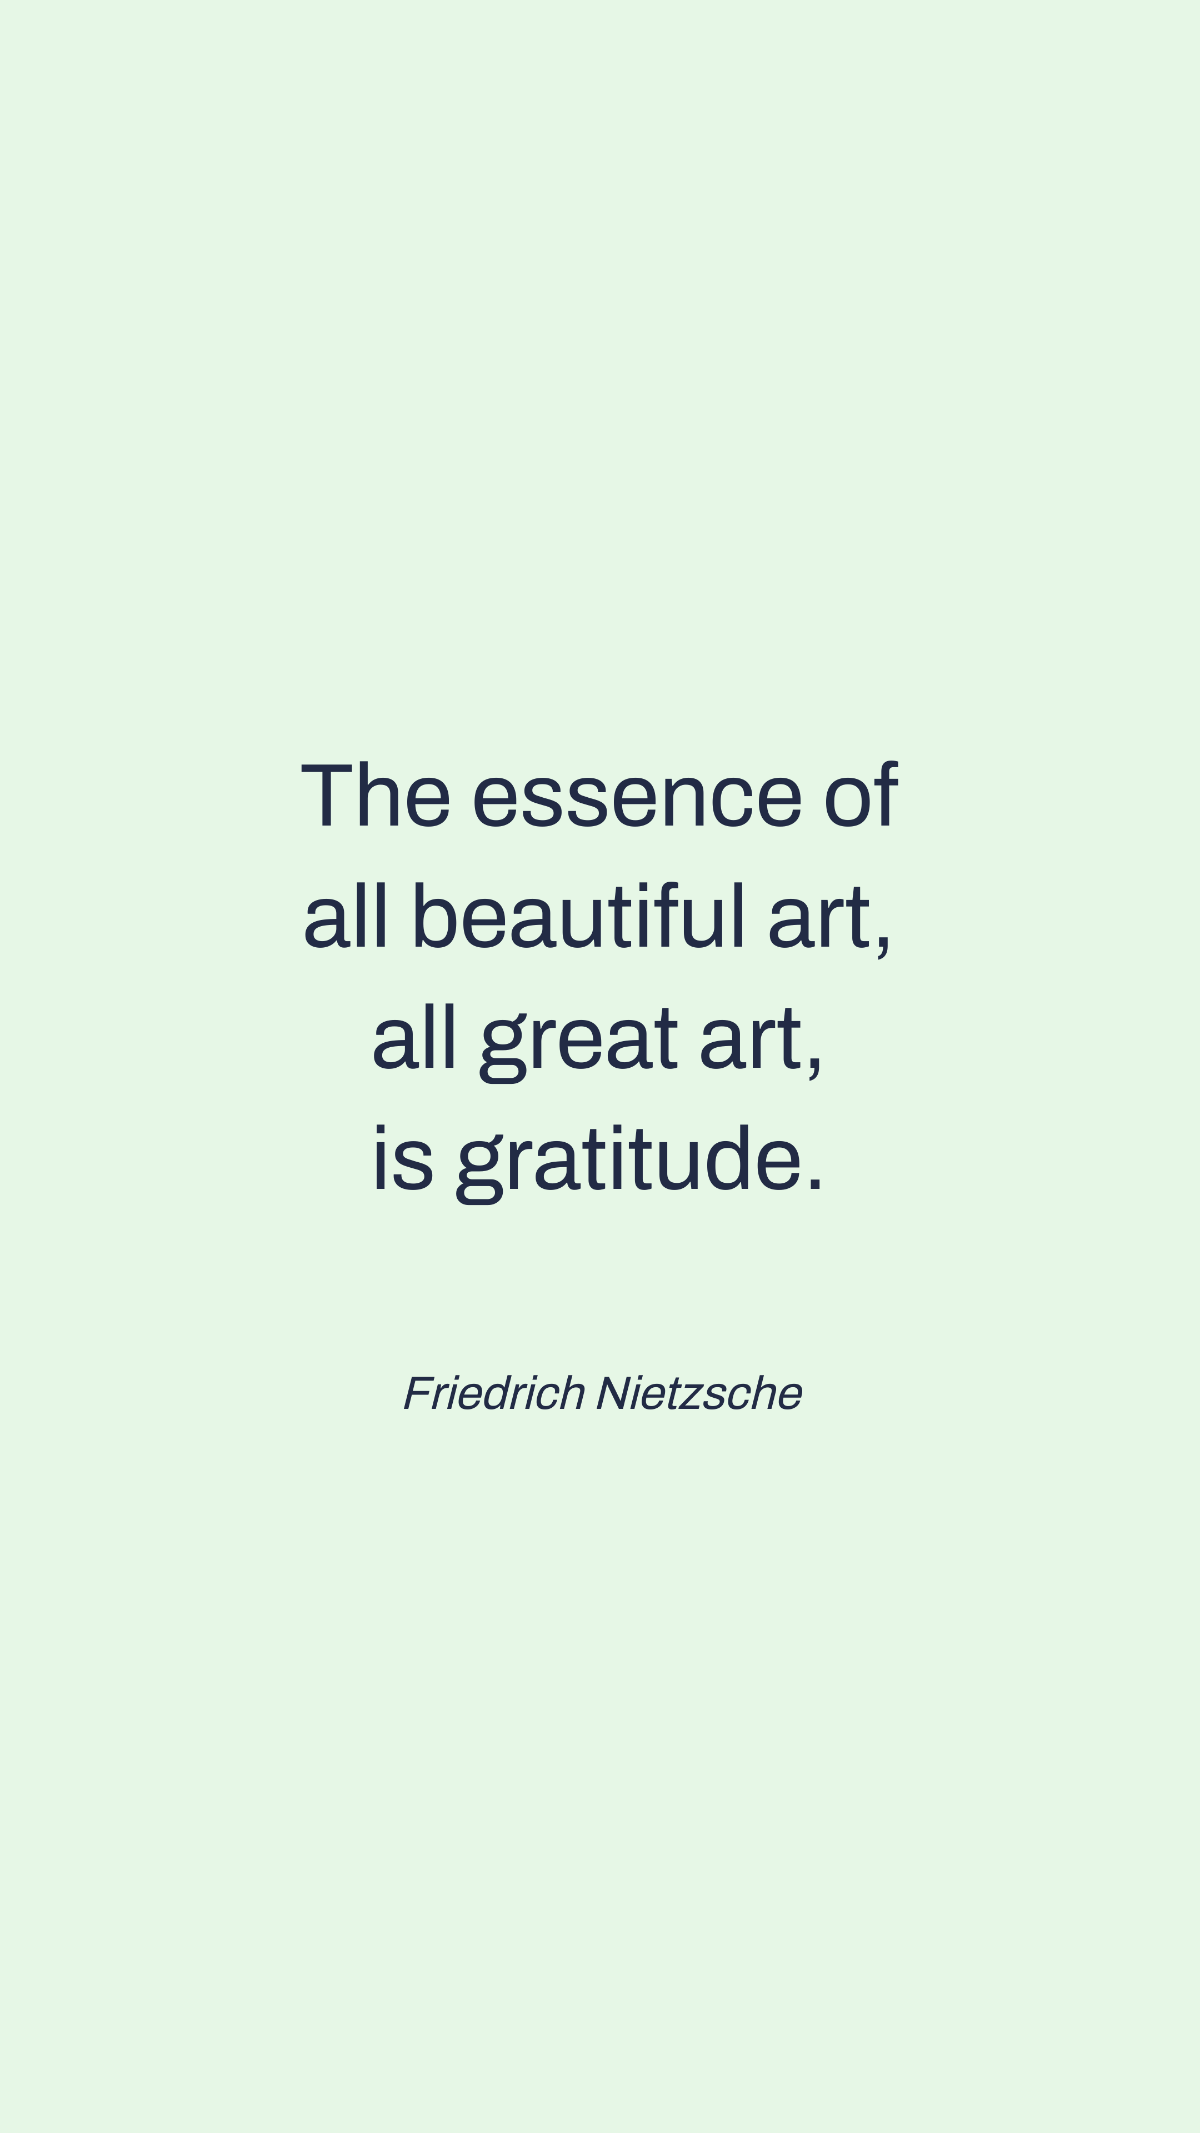 Friedrich Nietzsche - The essence of all beautiful art, all great art, is gratitude.